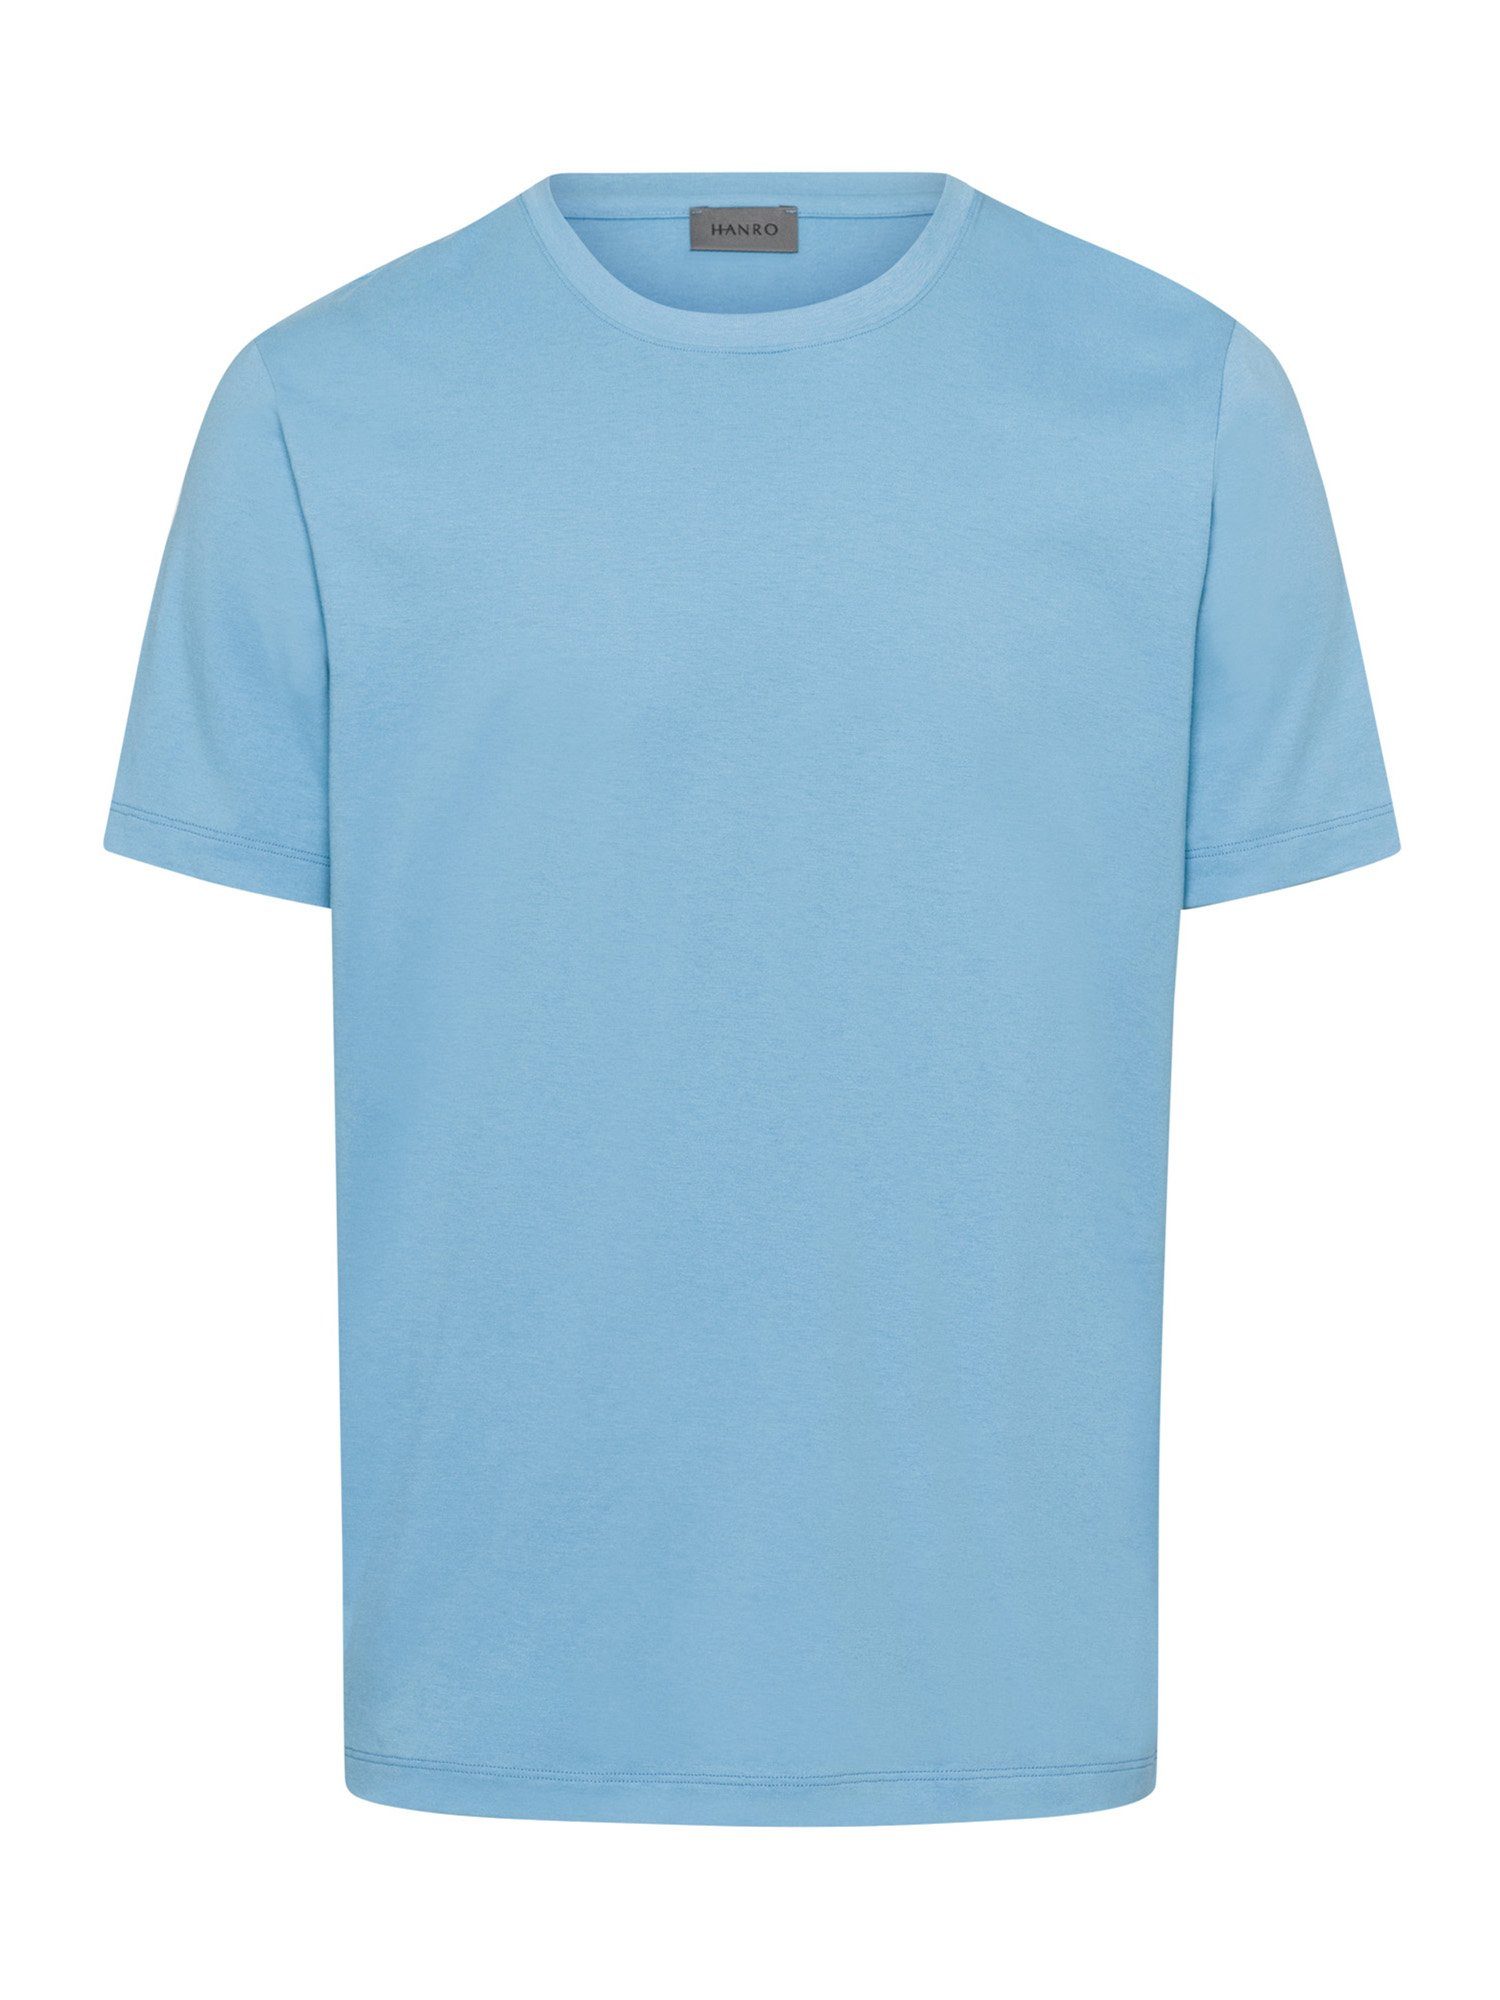 Hanro T-Shirt Living Shirts bonnie blue